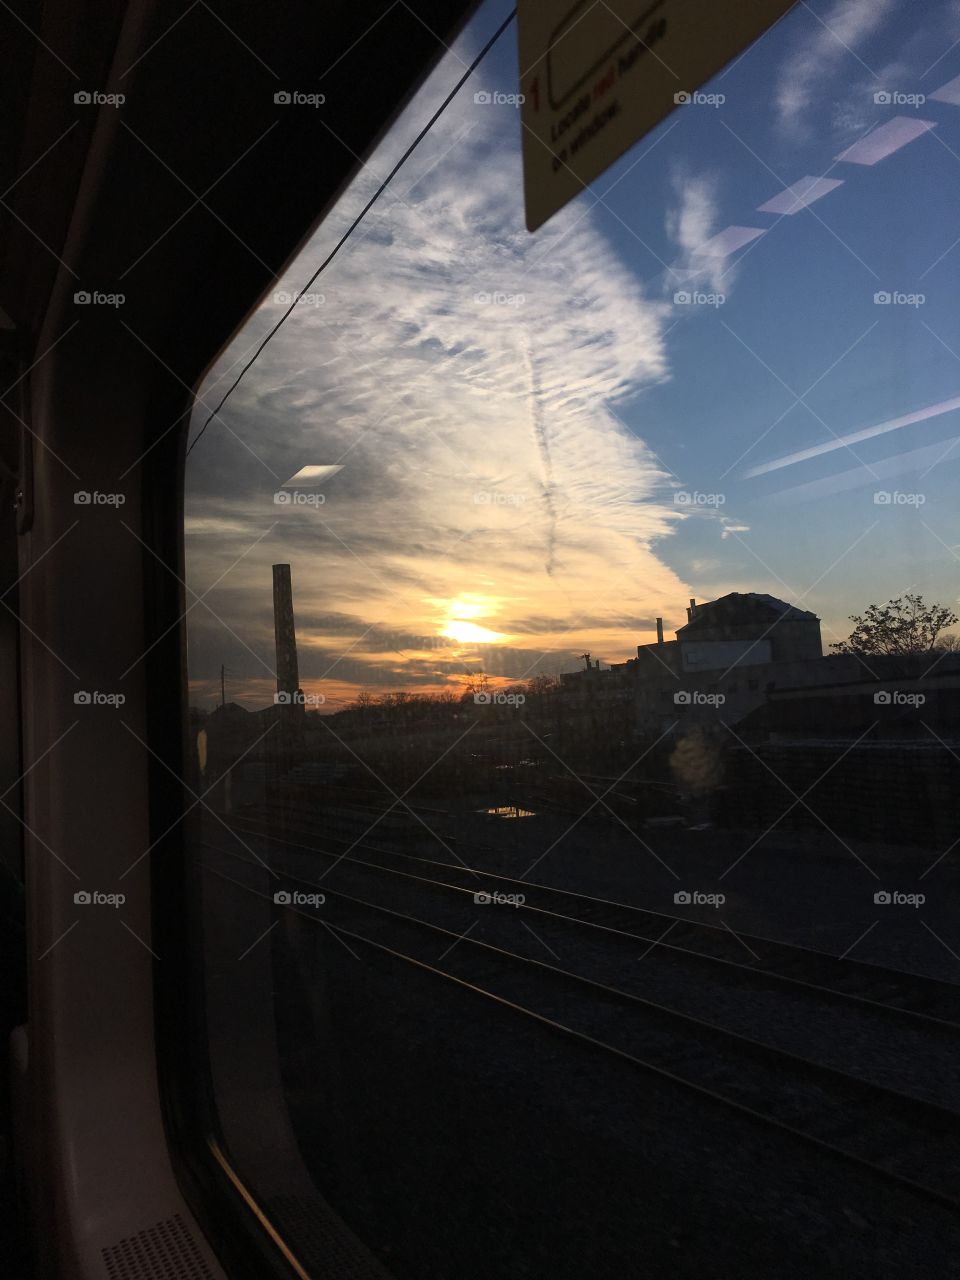 Train Views